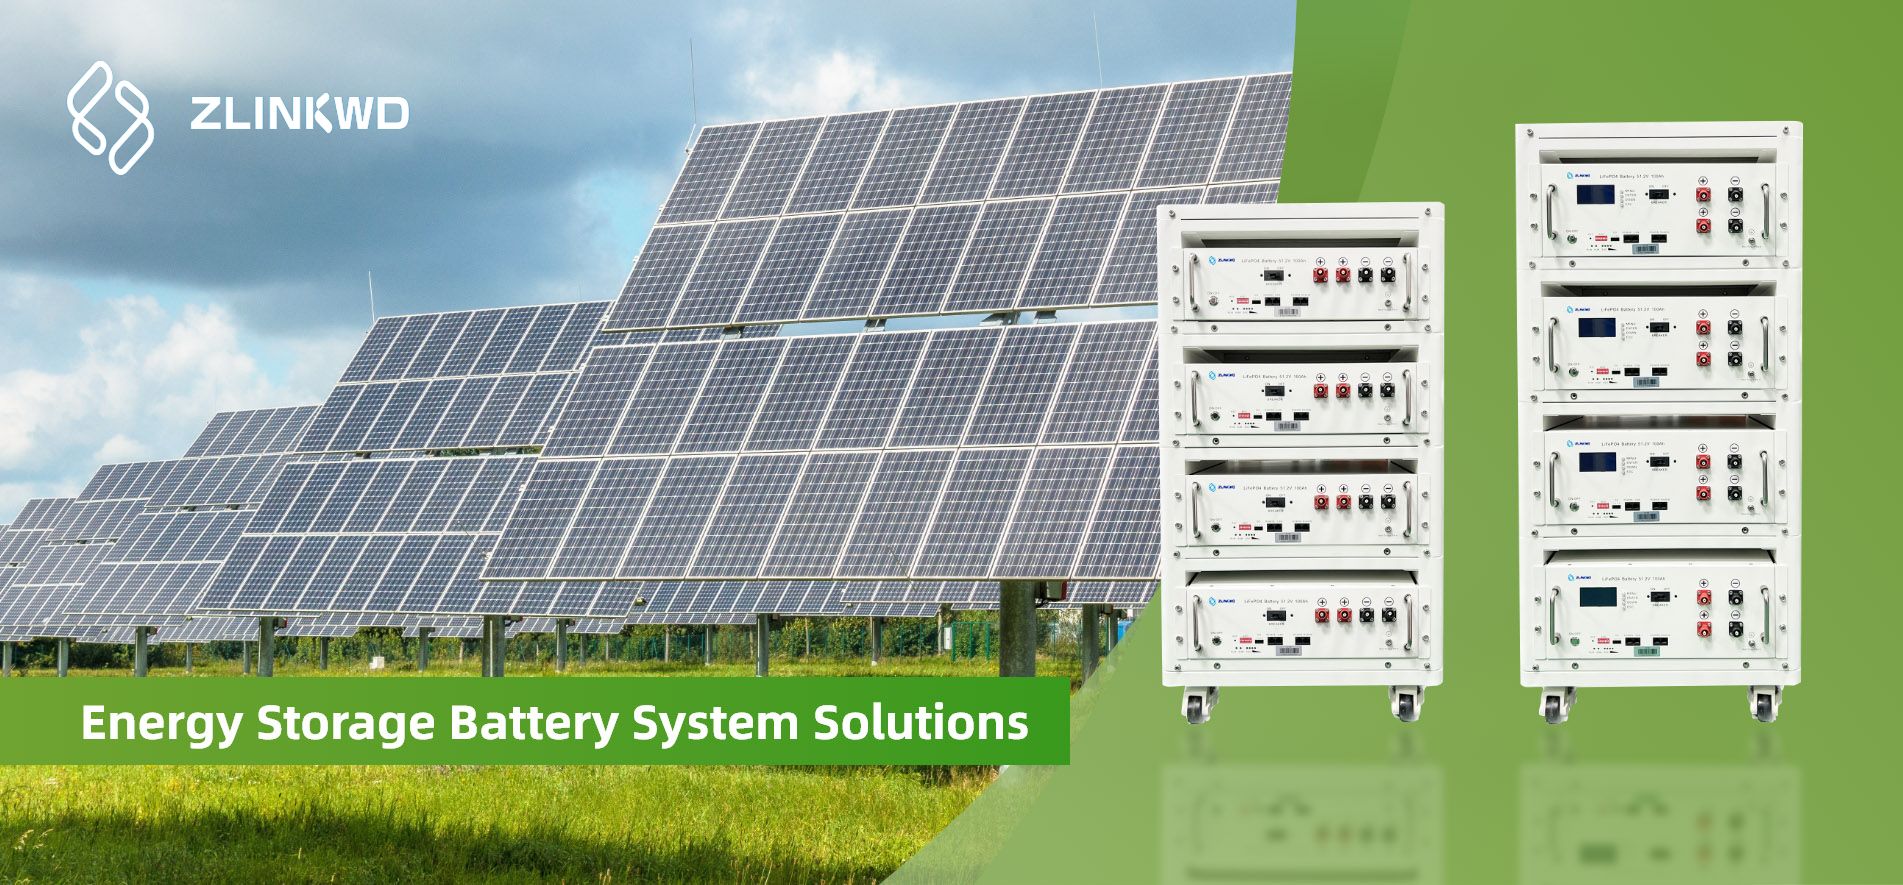 soluciones de sistema de batería de almacenamiento de energía